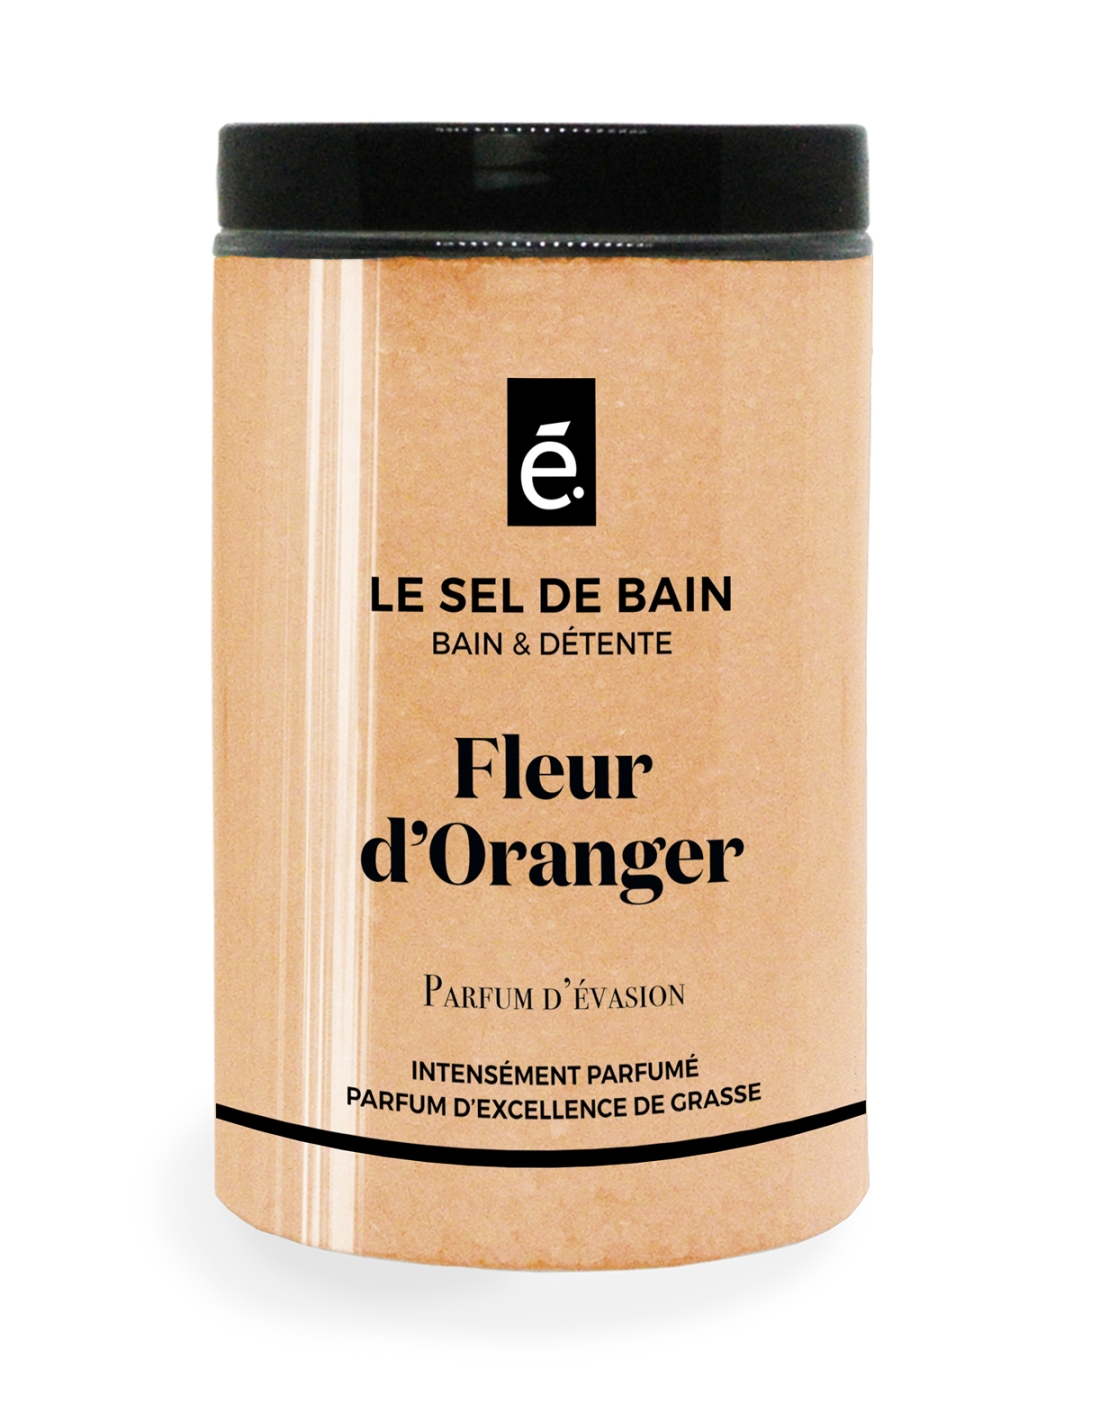 Sels de bain parfum Fleur d'Oranger - 1kg - Du Monde à la Provence